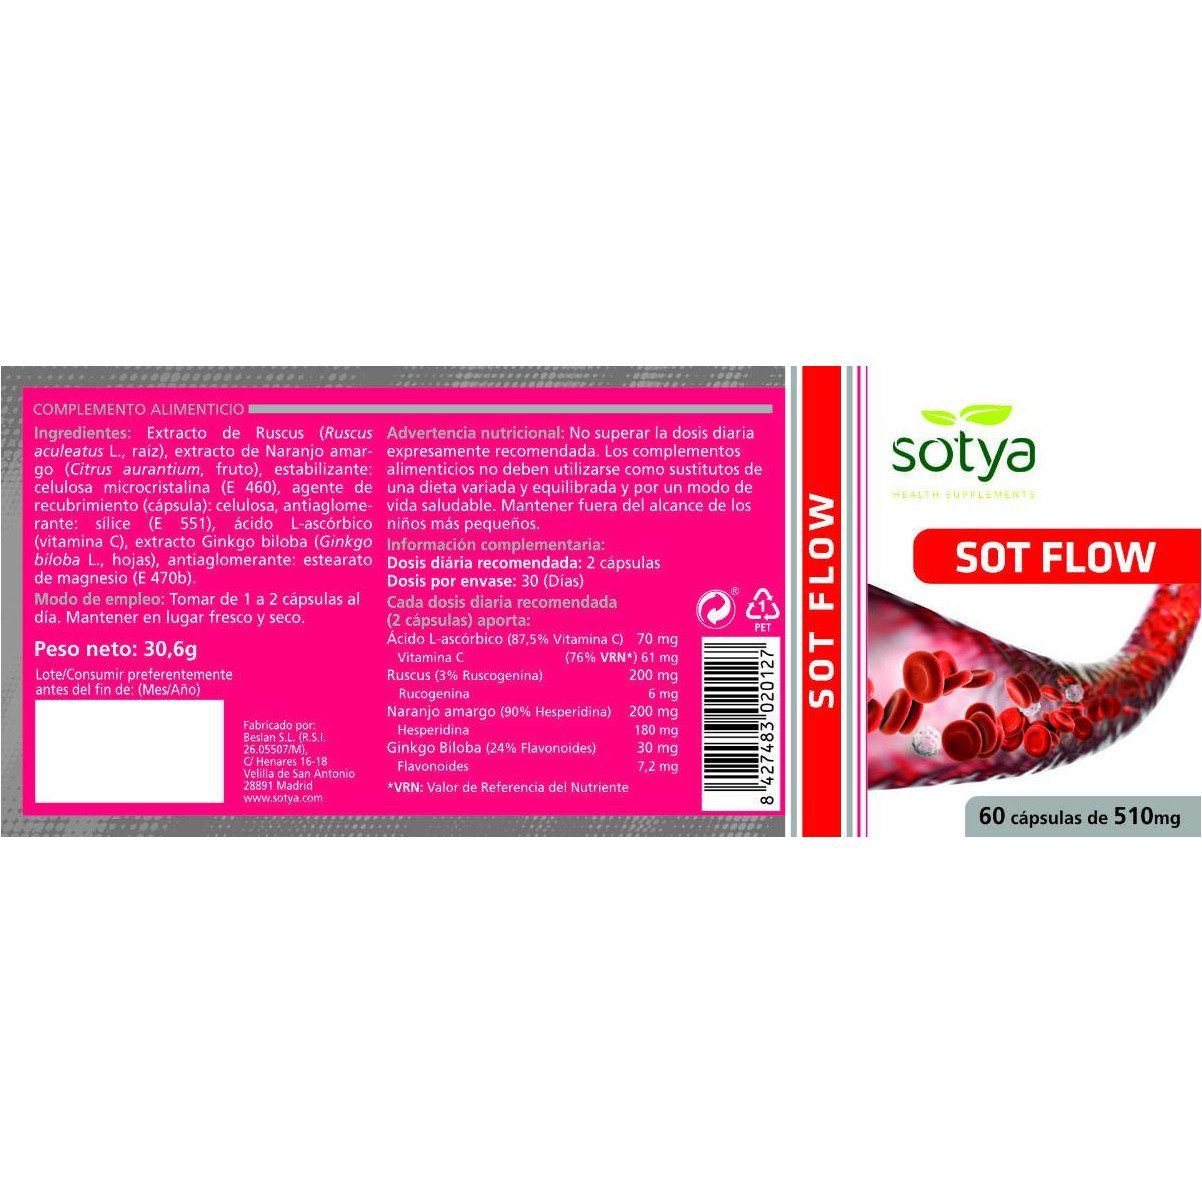 Sot Flow 60 Capsulas | Sotya - Dietetica Ferrer